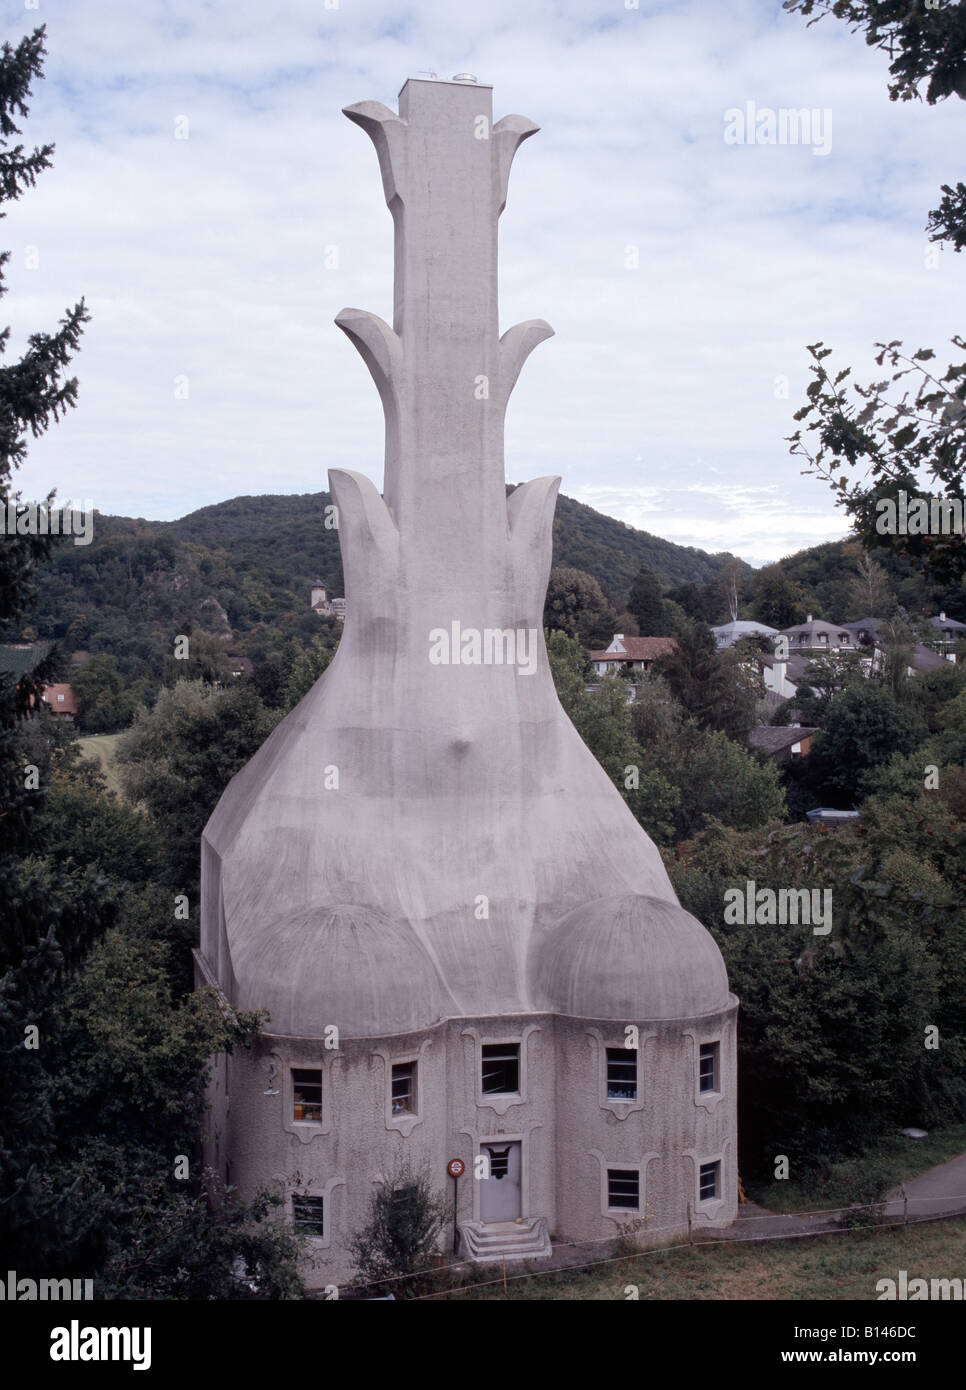 Dornach, Goetheanum, Heizhaus Stock Photo - Alamy